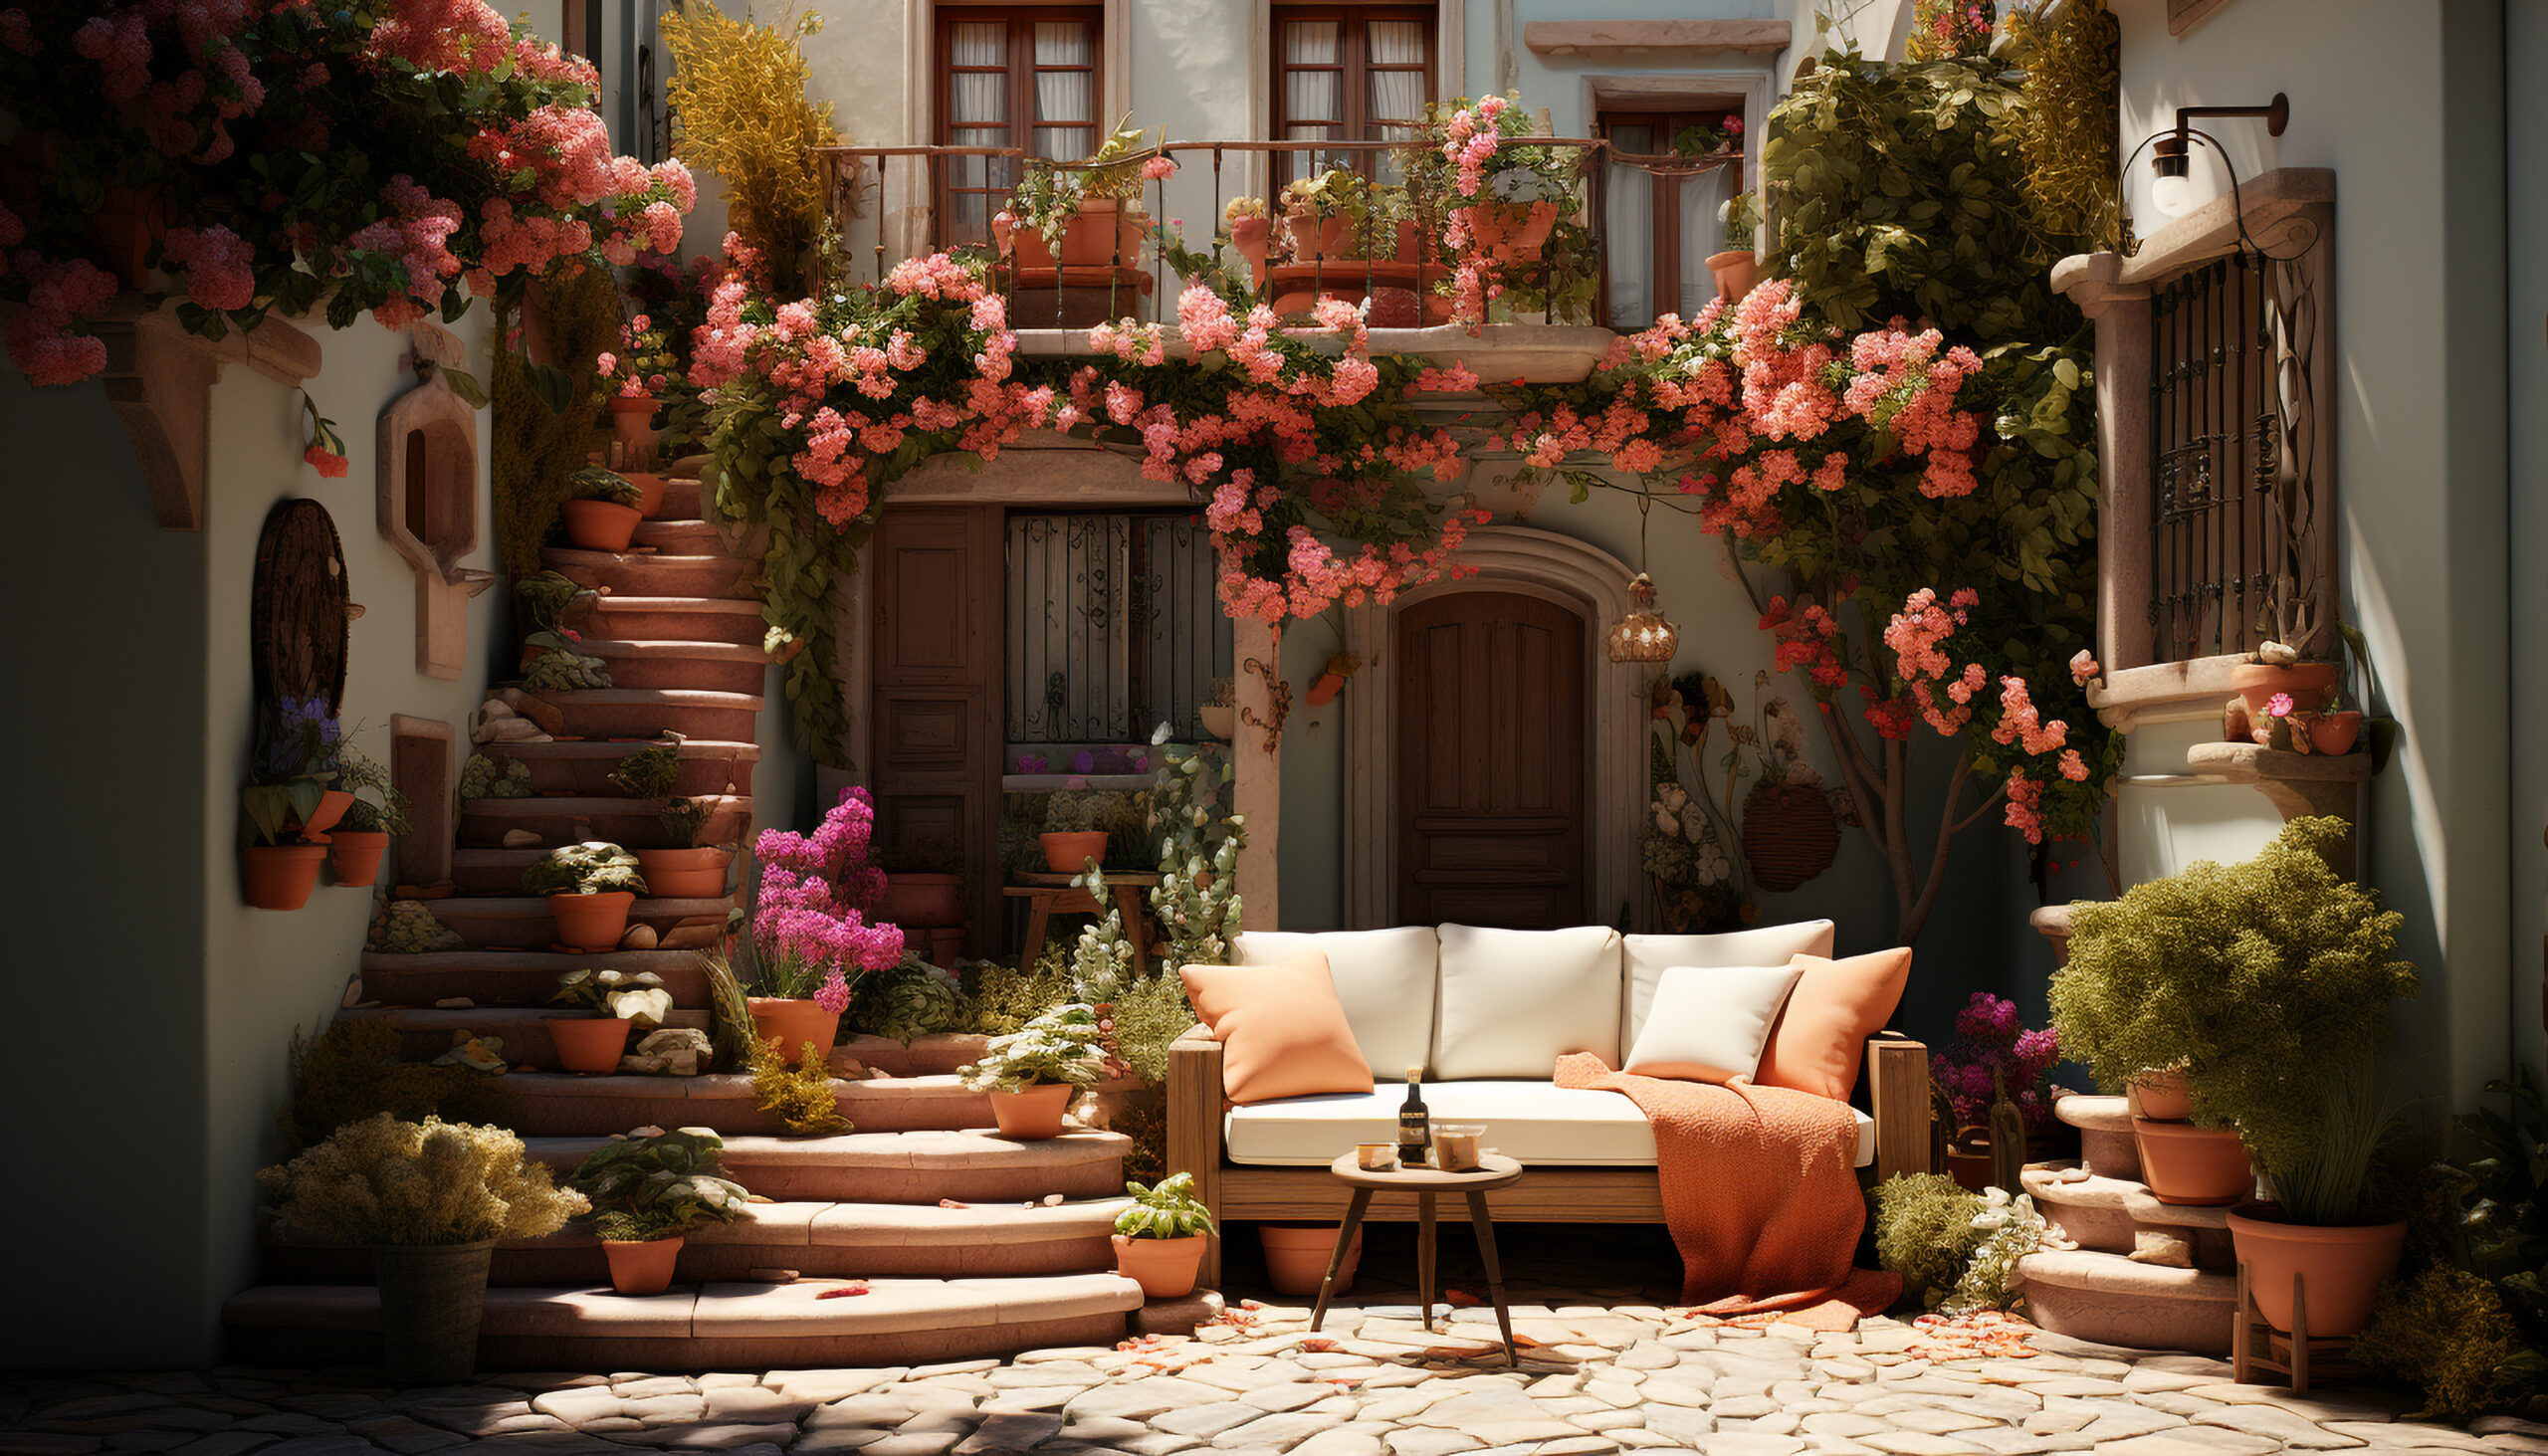 Ten ujmujący obrazek przedstawia romantyczny ogród, który rozkwita w pełni pięknych, kolorowych kwiatów, tworząc magiczną atmosferę pełną uroku i czaru